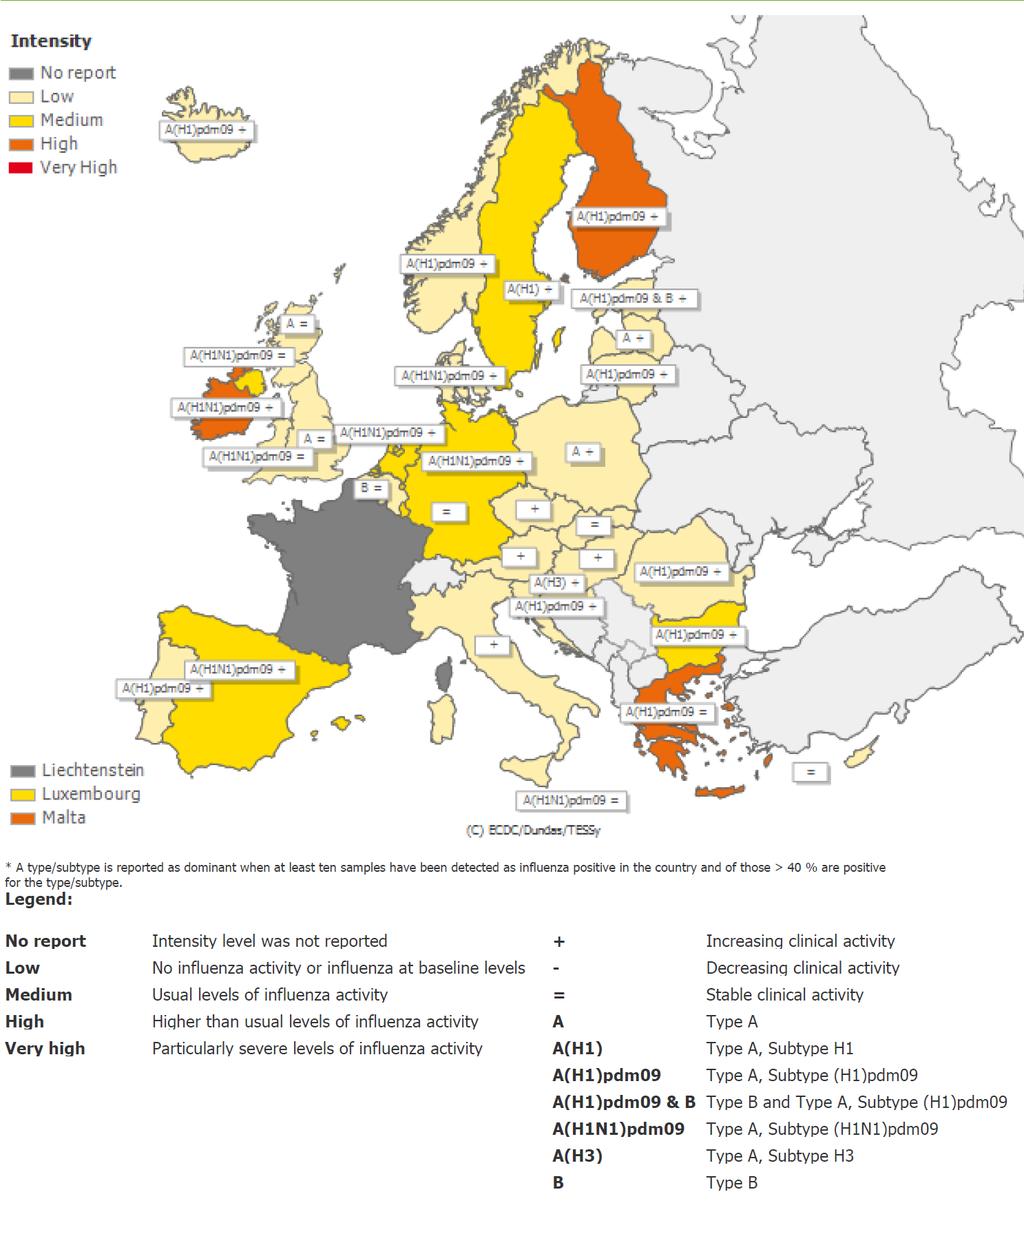 Instituto Nacional de Saúde Doutor Ricardo Jorge, I.P. Situação internacional: Europa Figura 12 Intensidade da atividade gripal na Europa, semana 3/216.